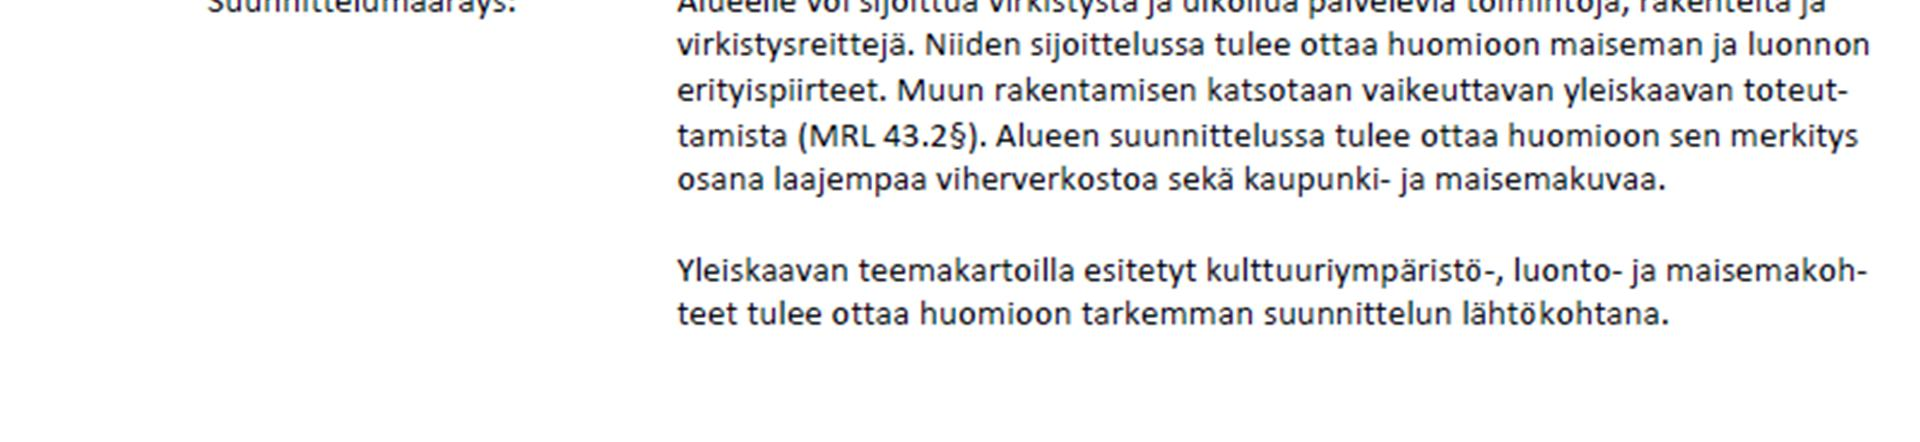 6 Kuva 5. Ote Jyväskylän kaupungin yleiskaavaluonnoksesta 24.4.2012.